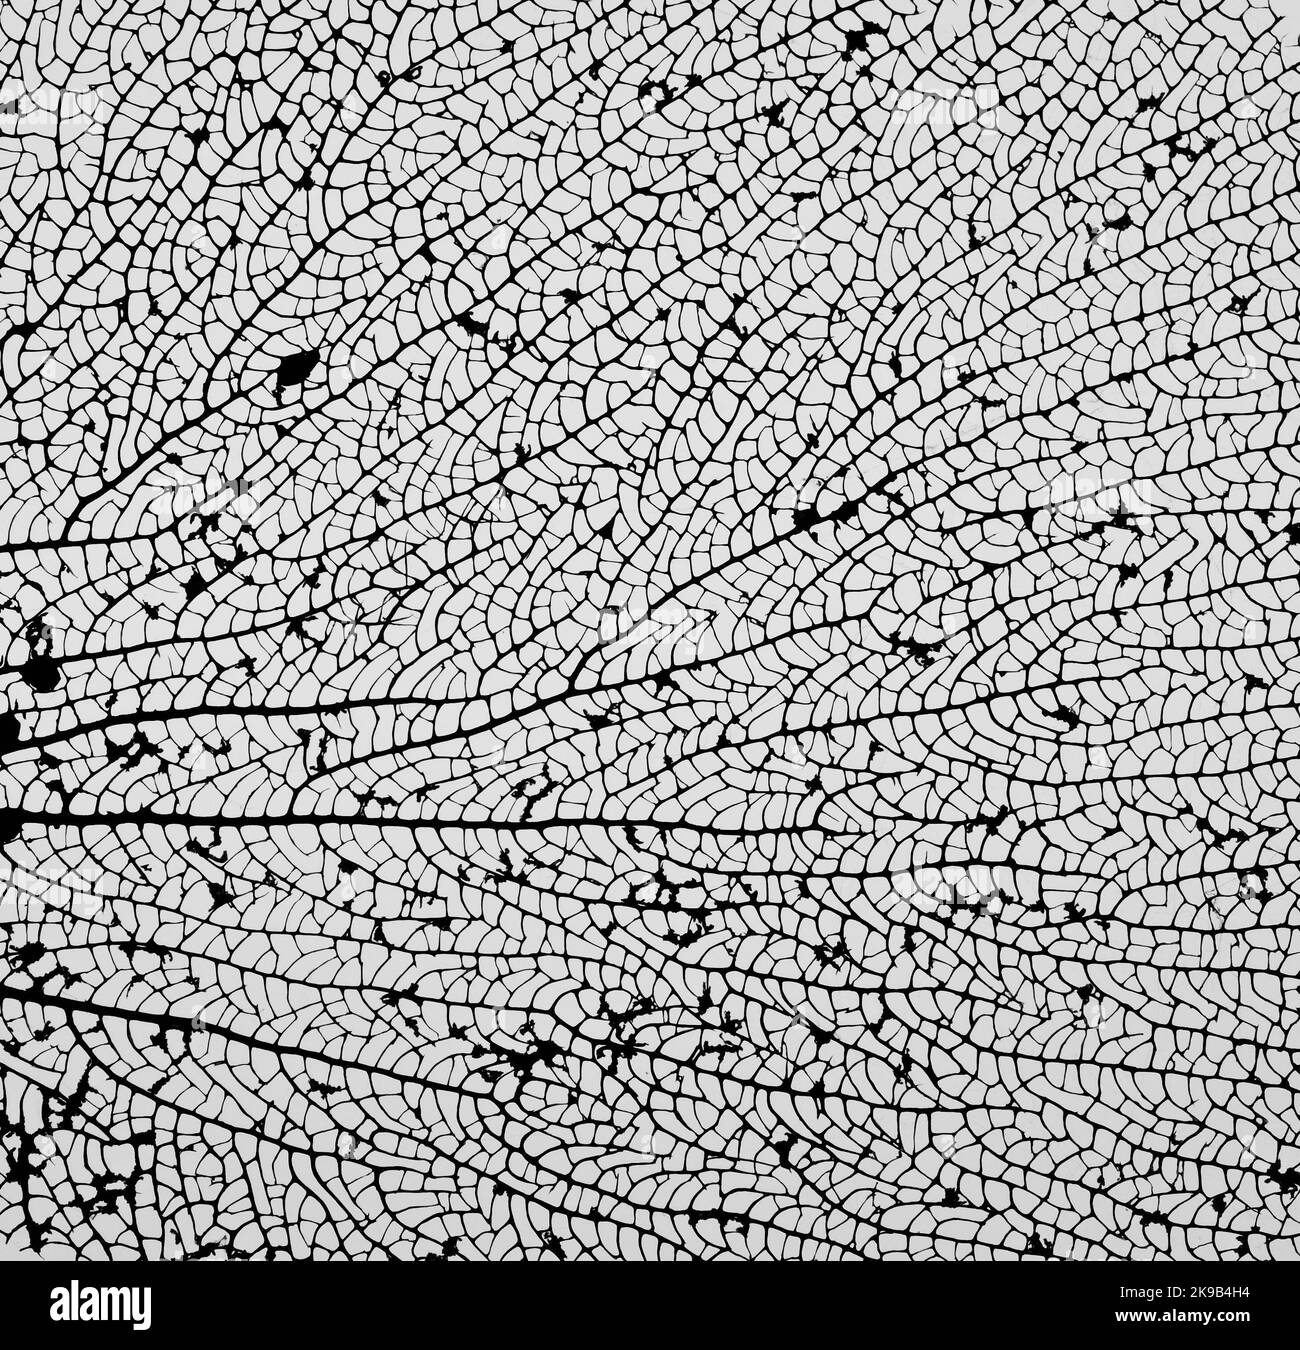 Abstrakte Nahaufnahme grafische Textur von ausgetrockneten schwarzen und weißen Blattstruktur Muster in der Natur. Dynamisches Designelement für Poster/Hintergrund/Tapete. Stockfoto